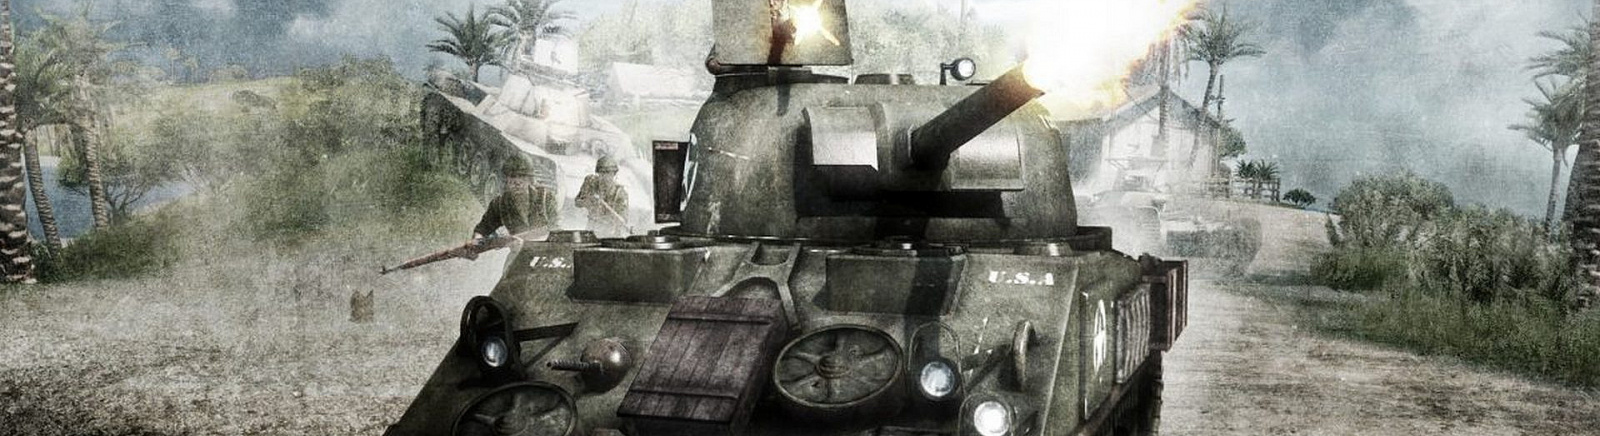 Дата выхода Battlefield 1943  на PS3 и Xbox 360 в России и во всем мире